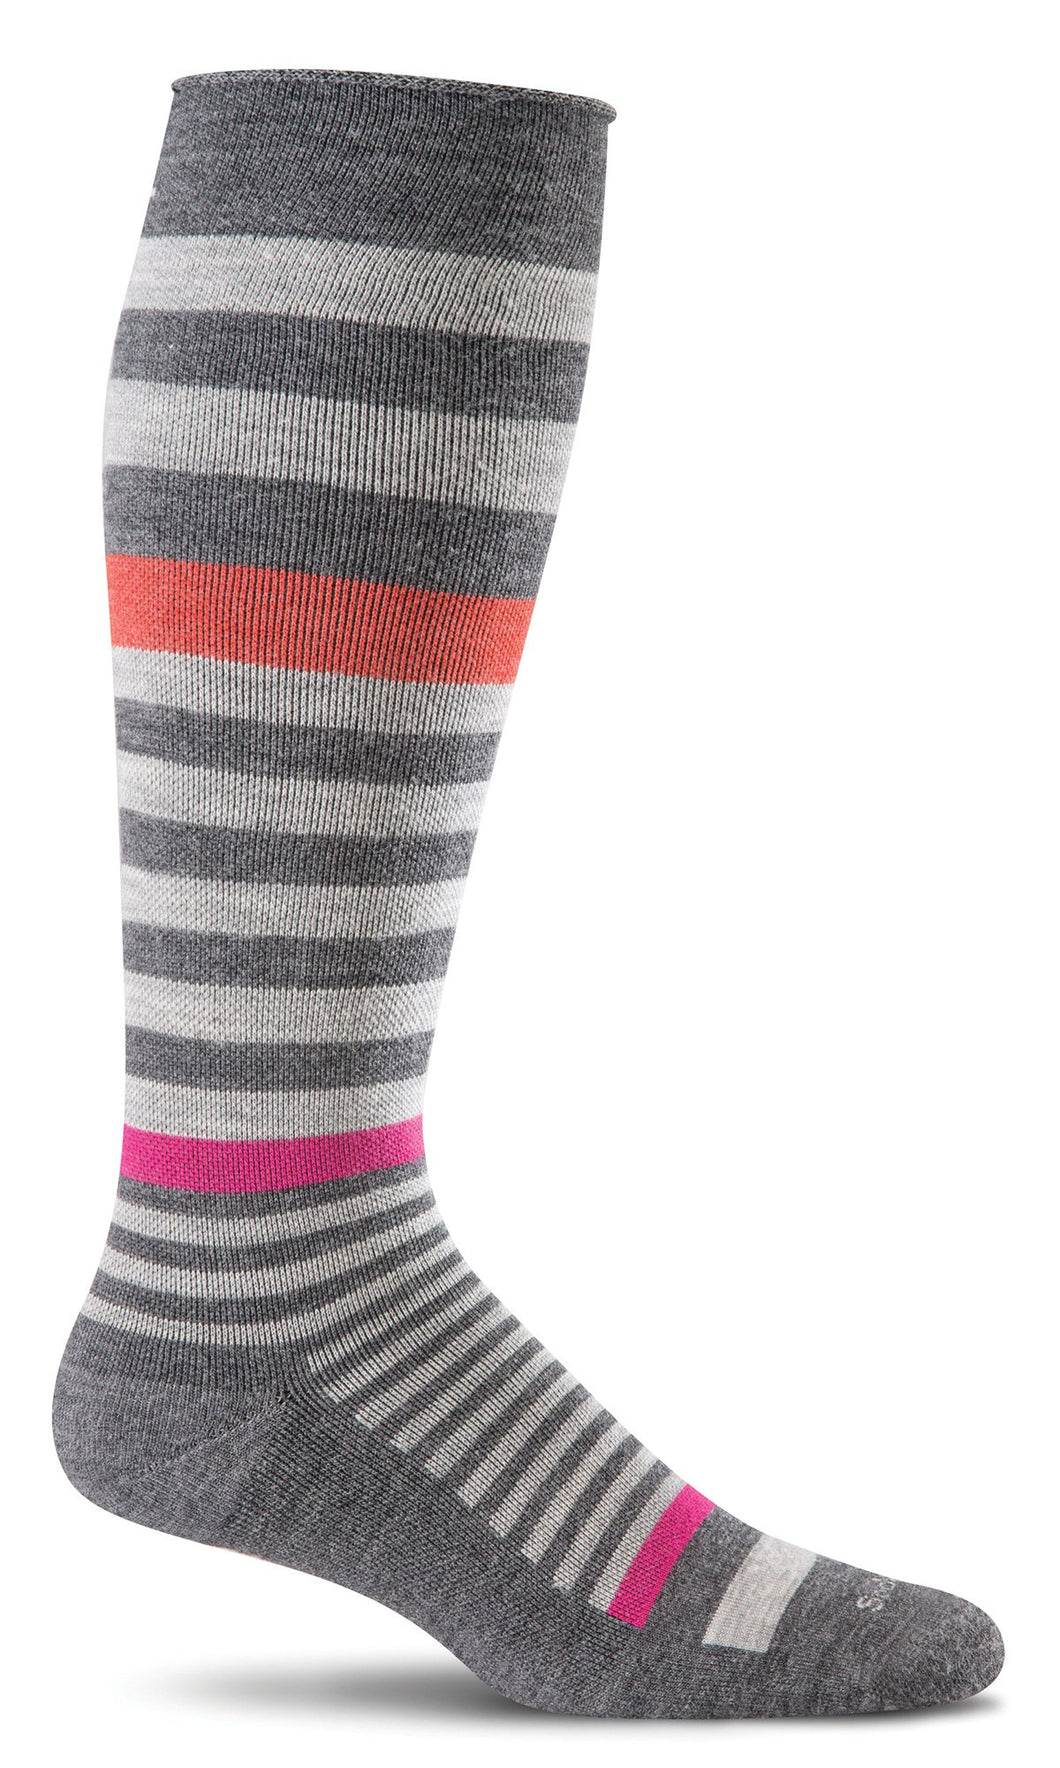 Sockwell Women's Orbital Stripe Graduated Compression Socks